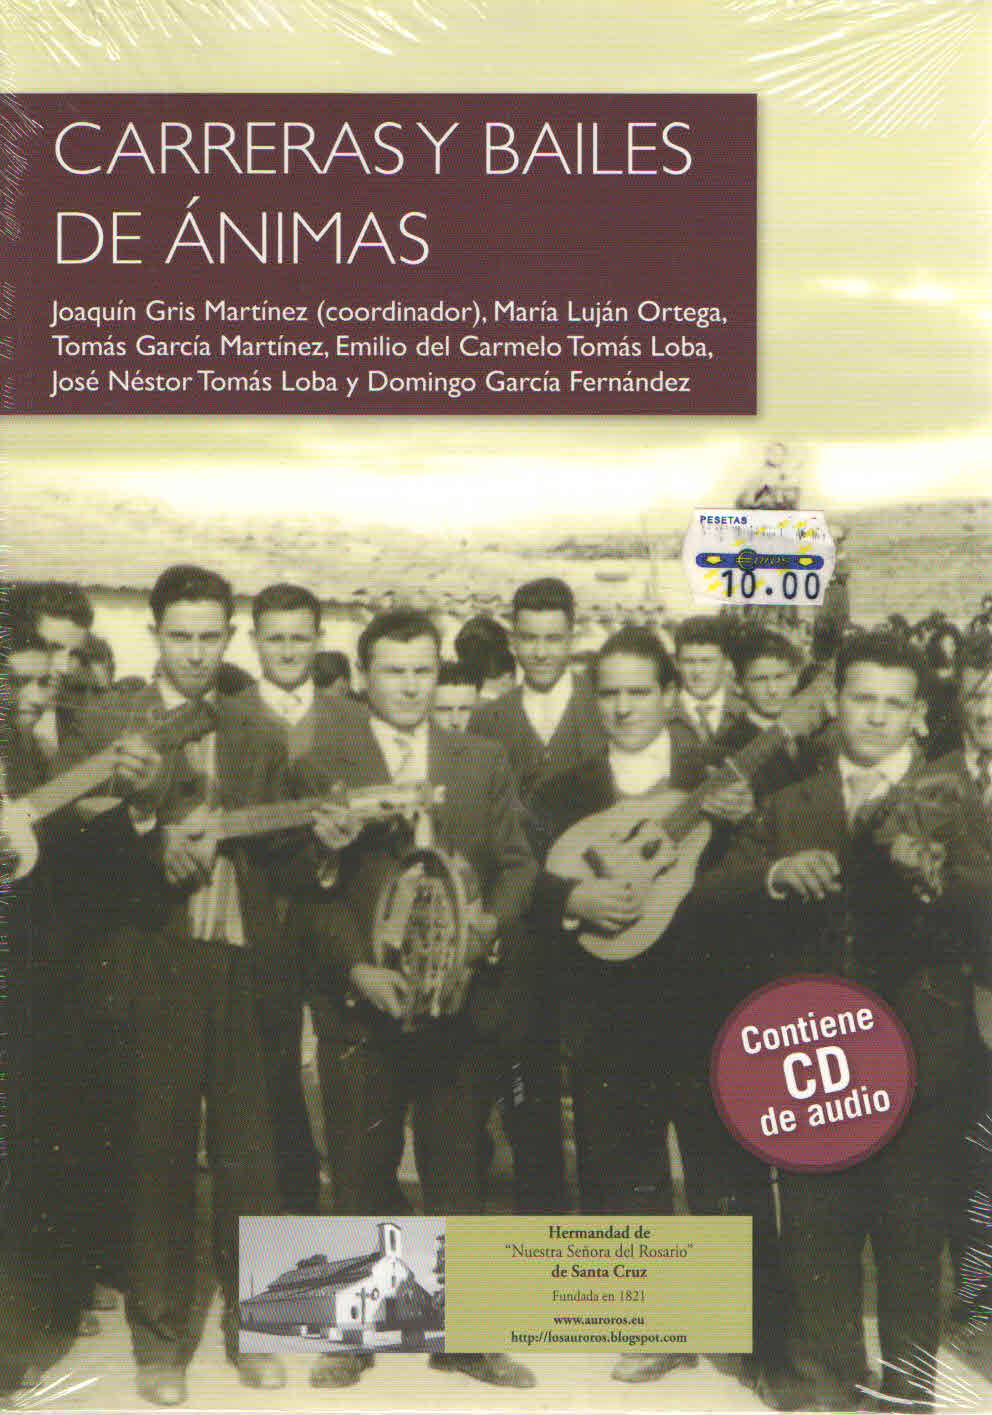 CARRERAS  Y BAILES DE ANIMAS. Joaquin Gris Martinez. Contiene CD.